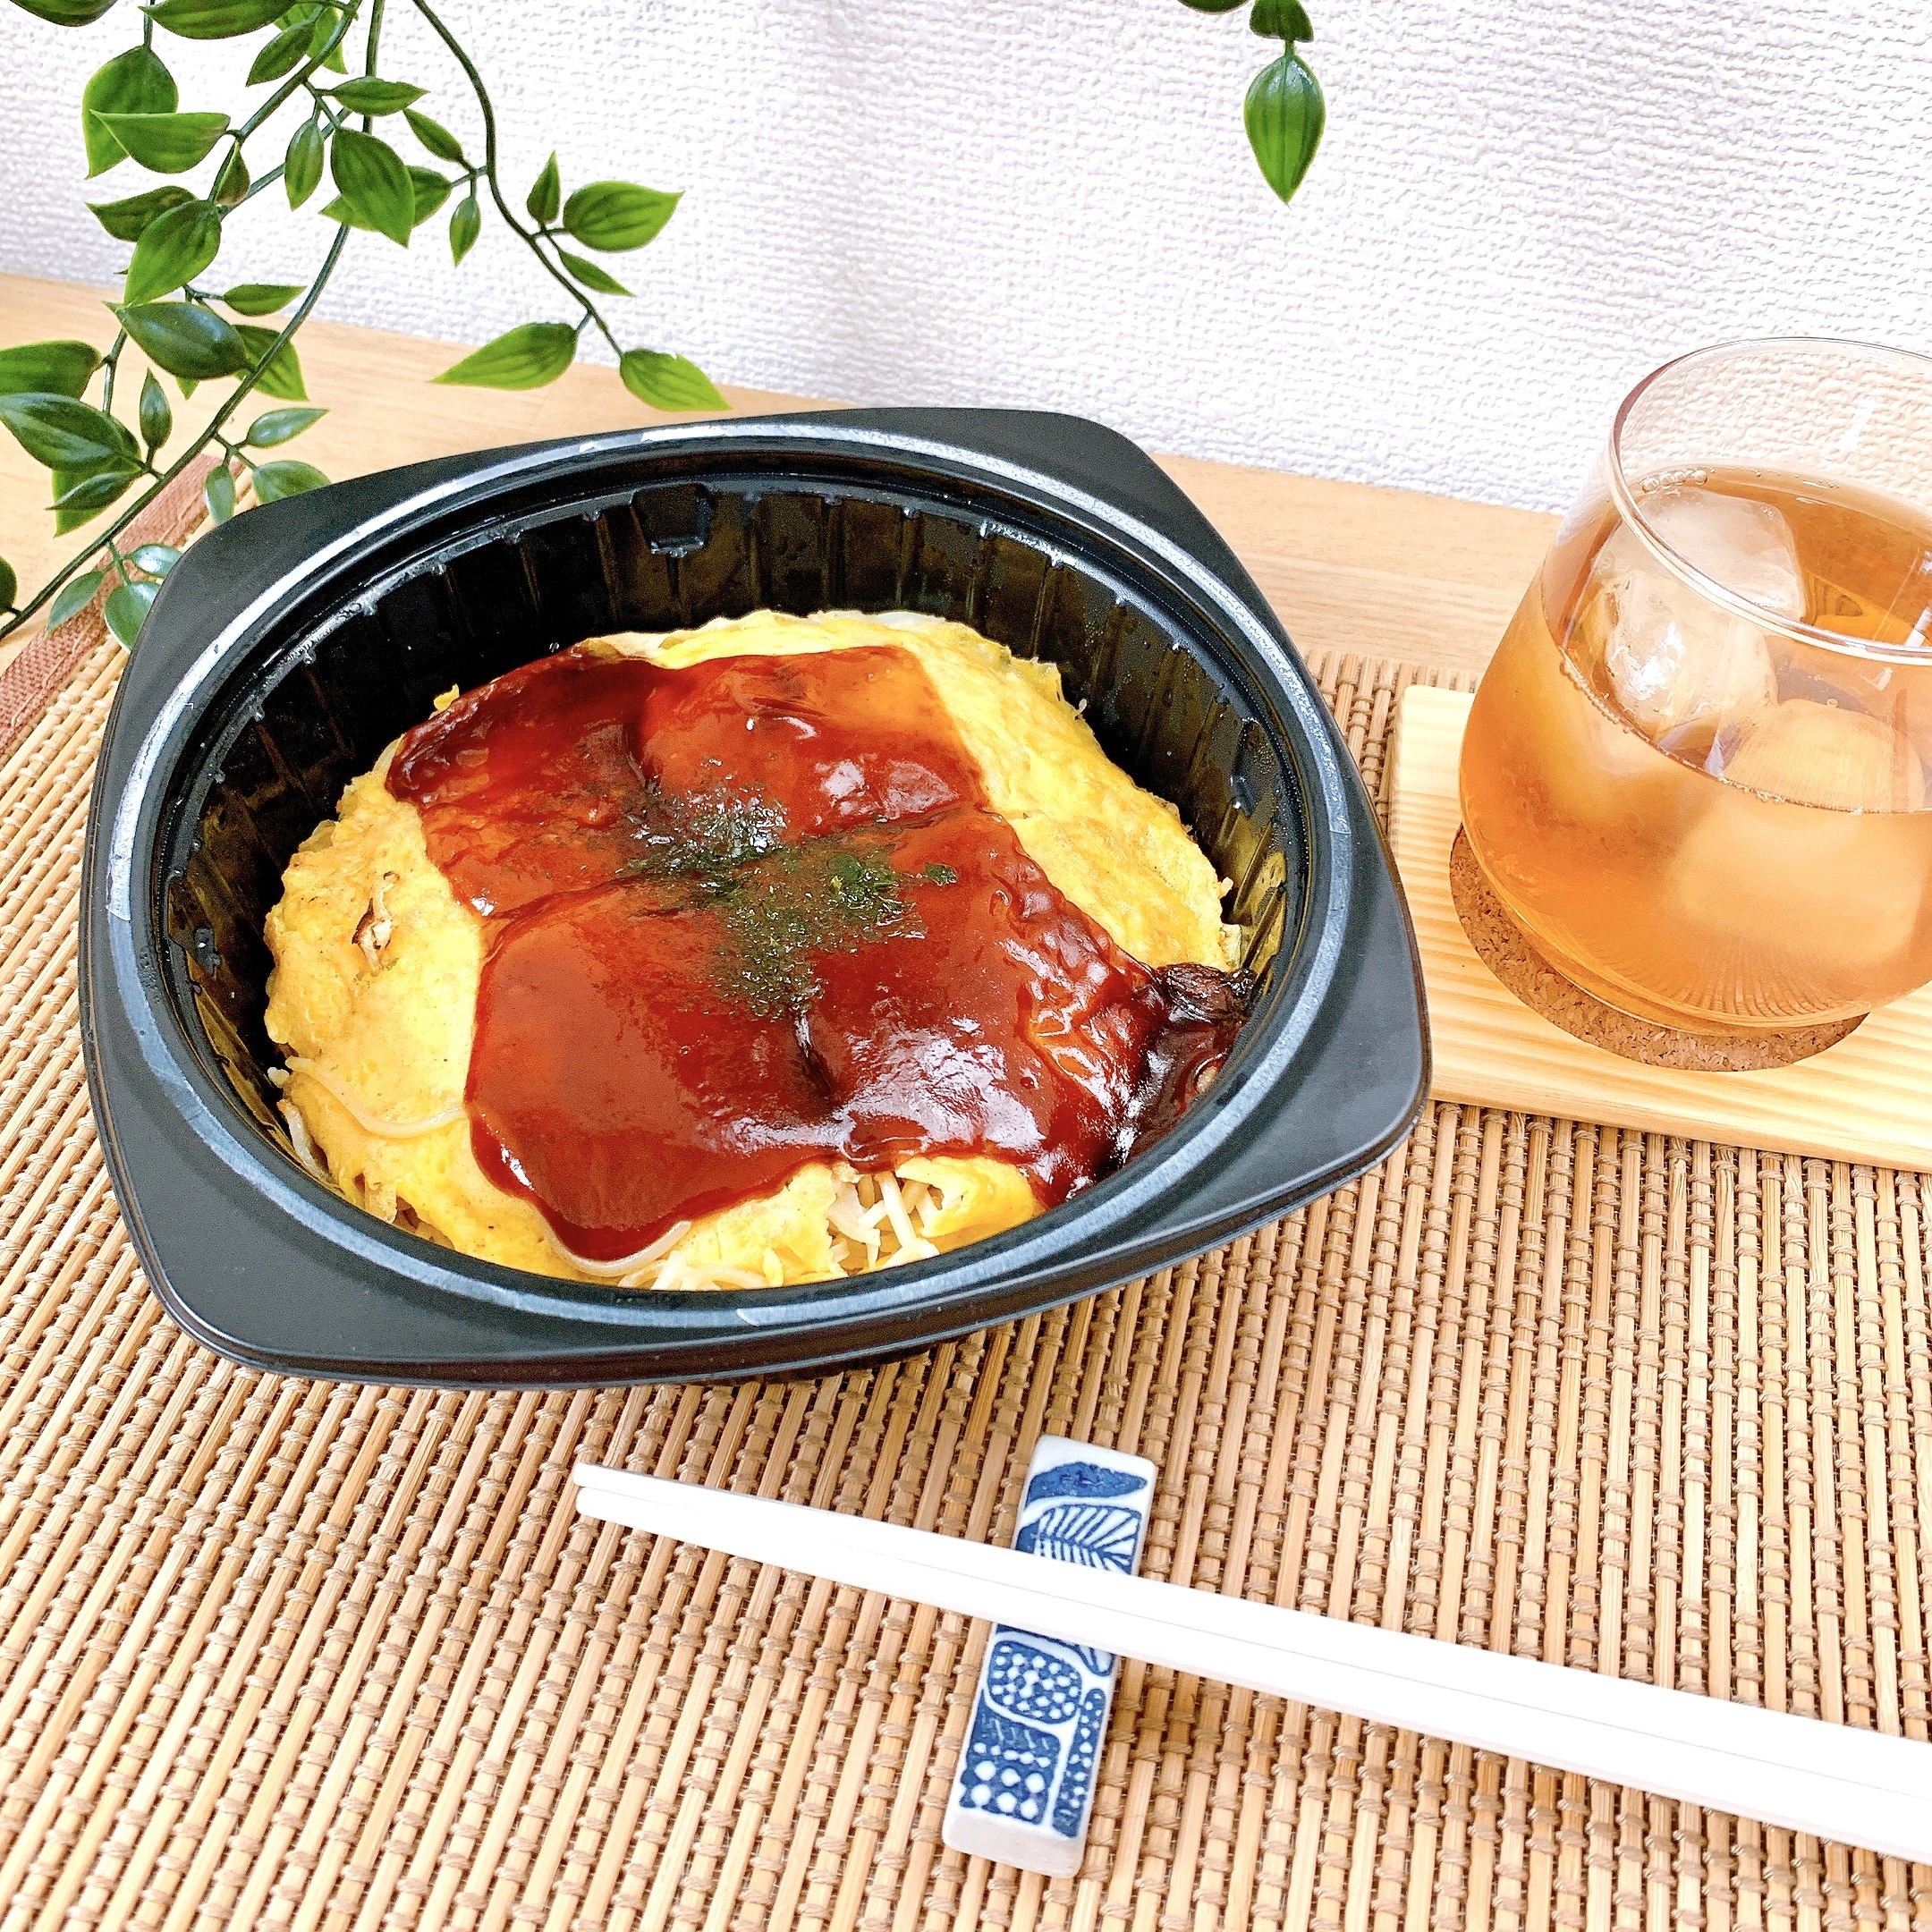 セブン-イレブンのおすすめの冷凍食品「7プレミアム 広島お好み焼き」